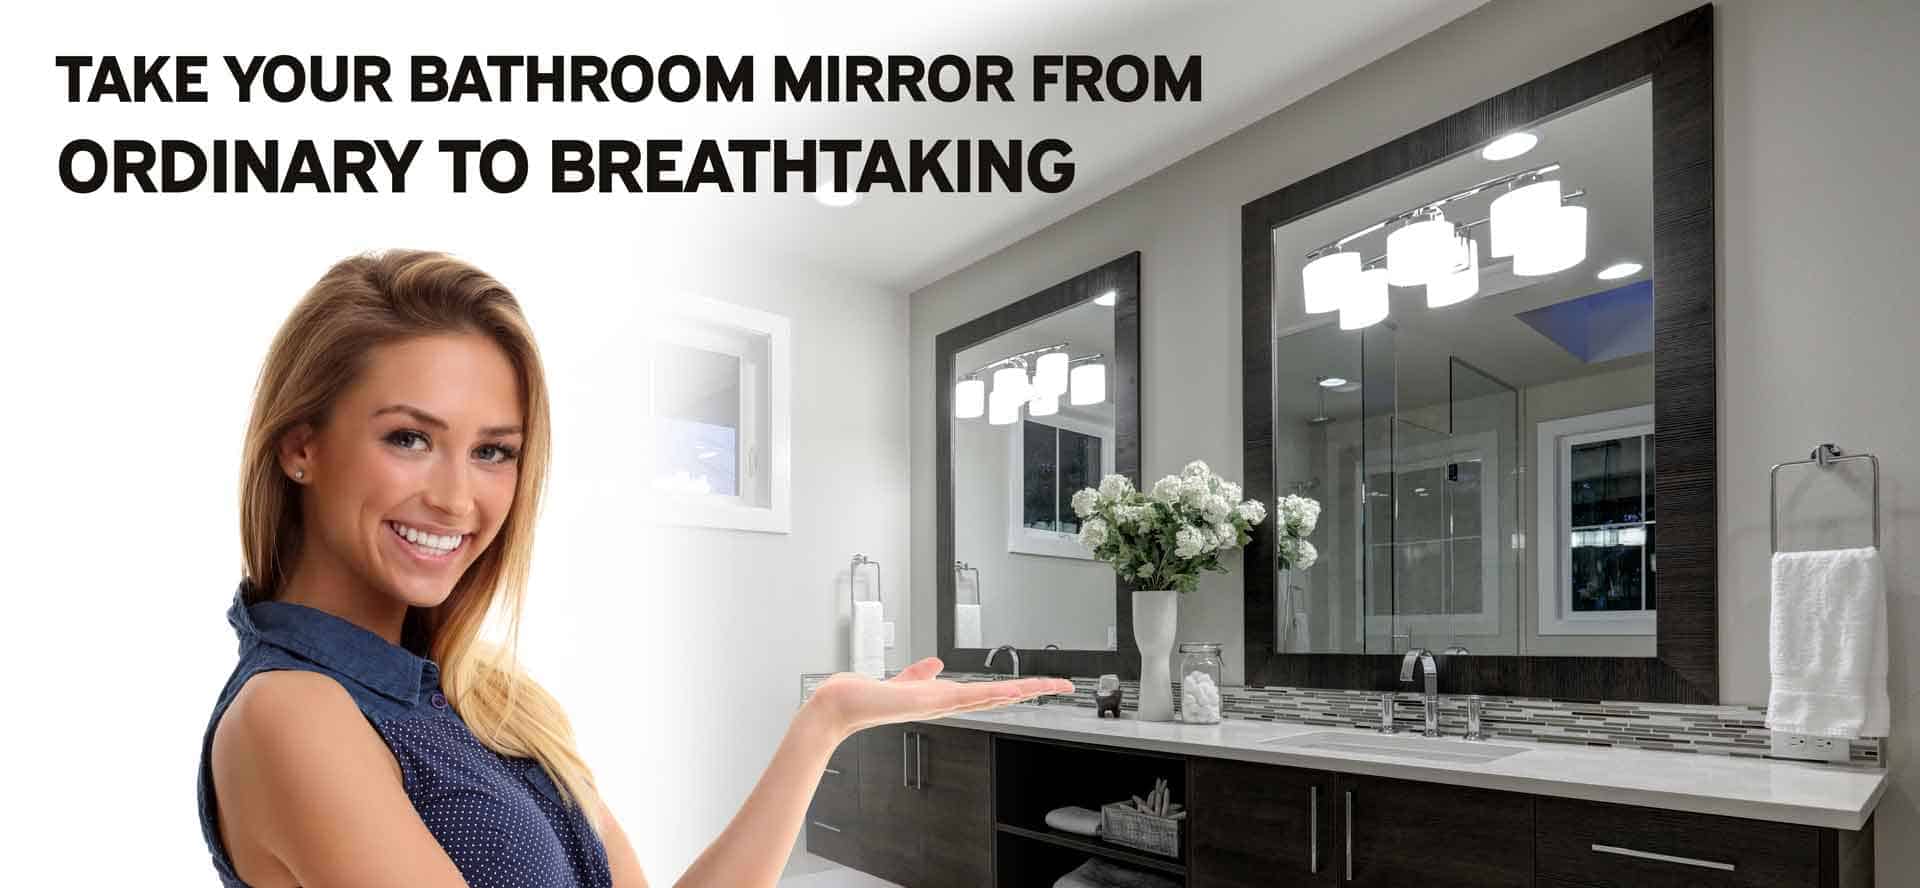 Custom Bathroom Mirror Frames, How To Trim Bathroom Mirror